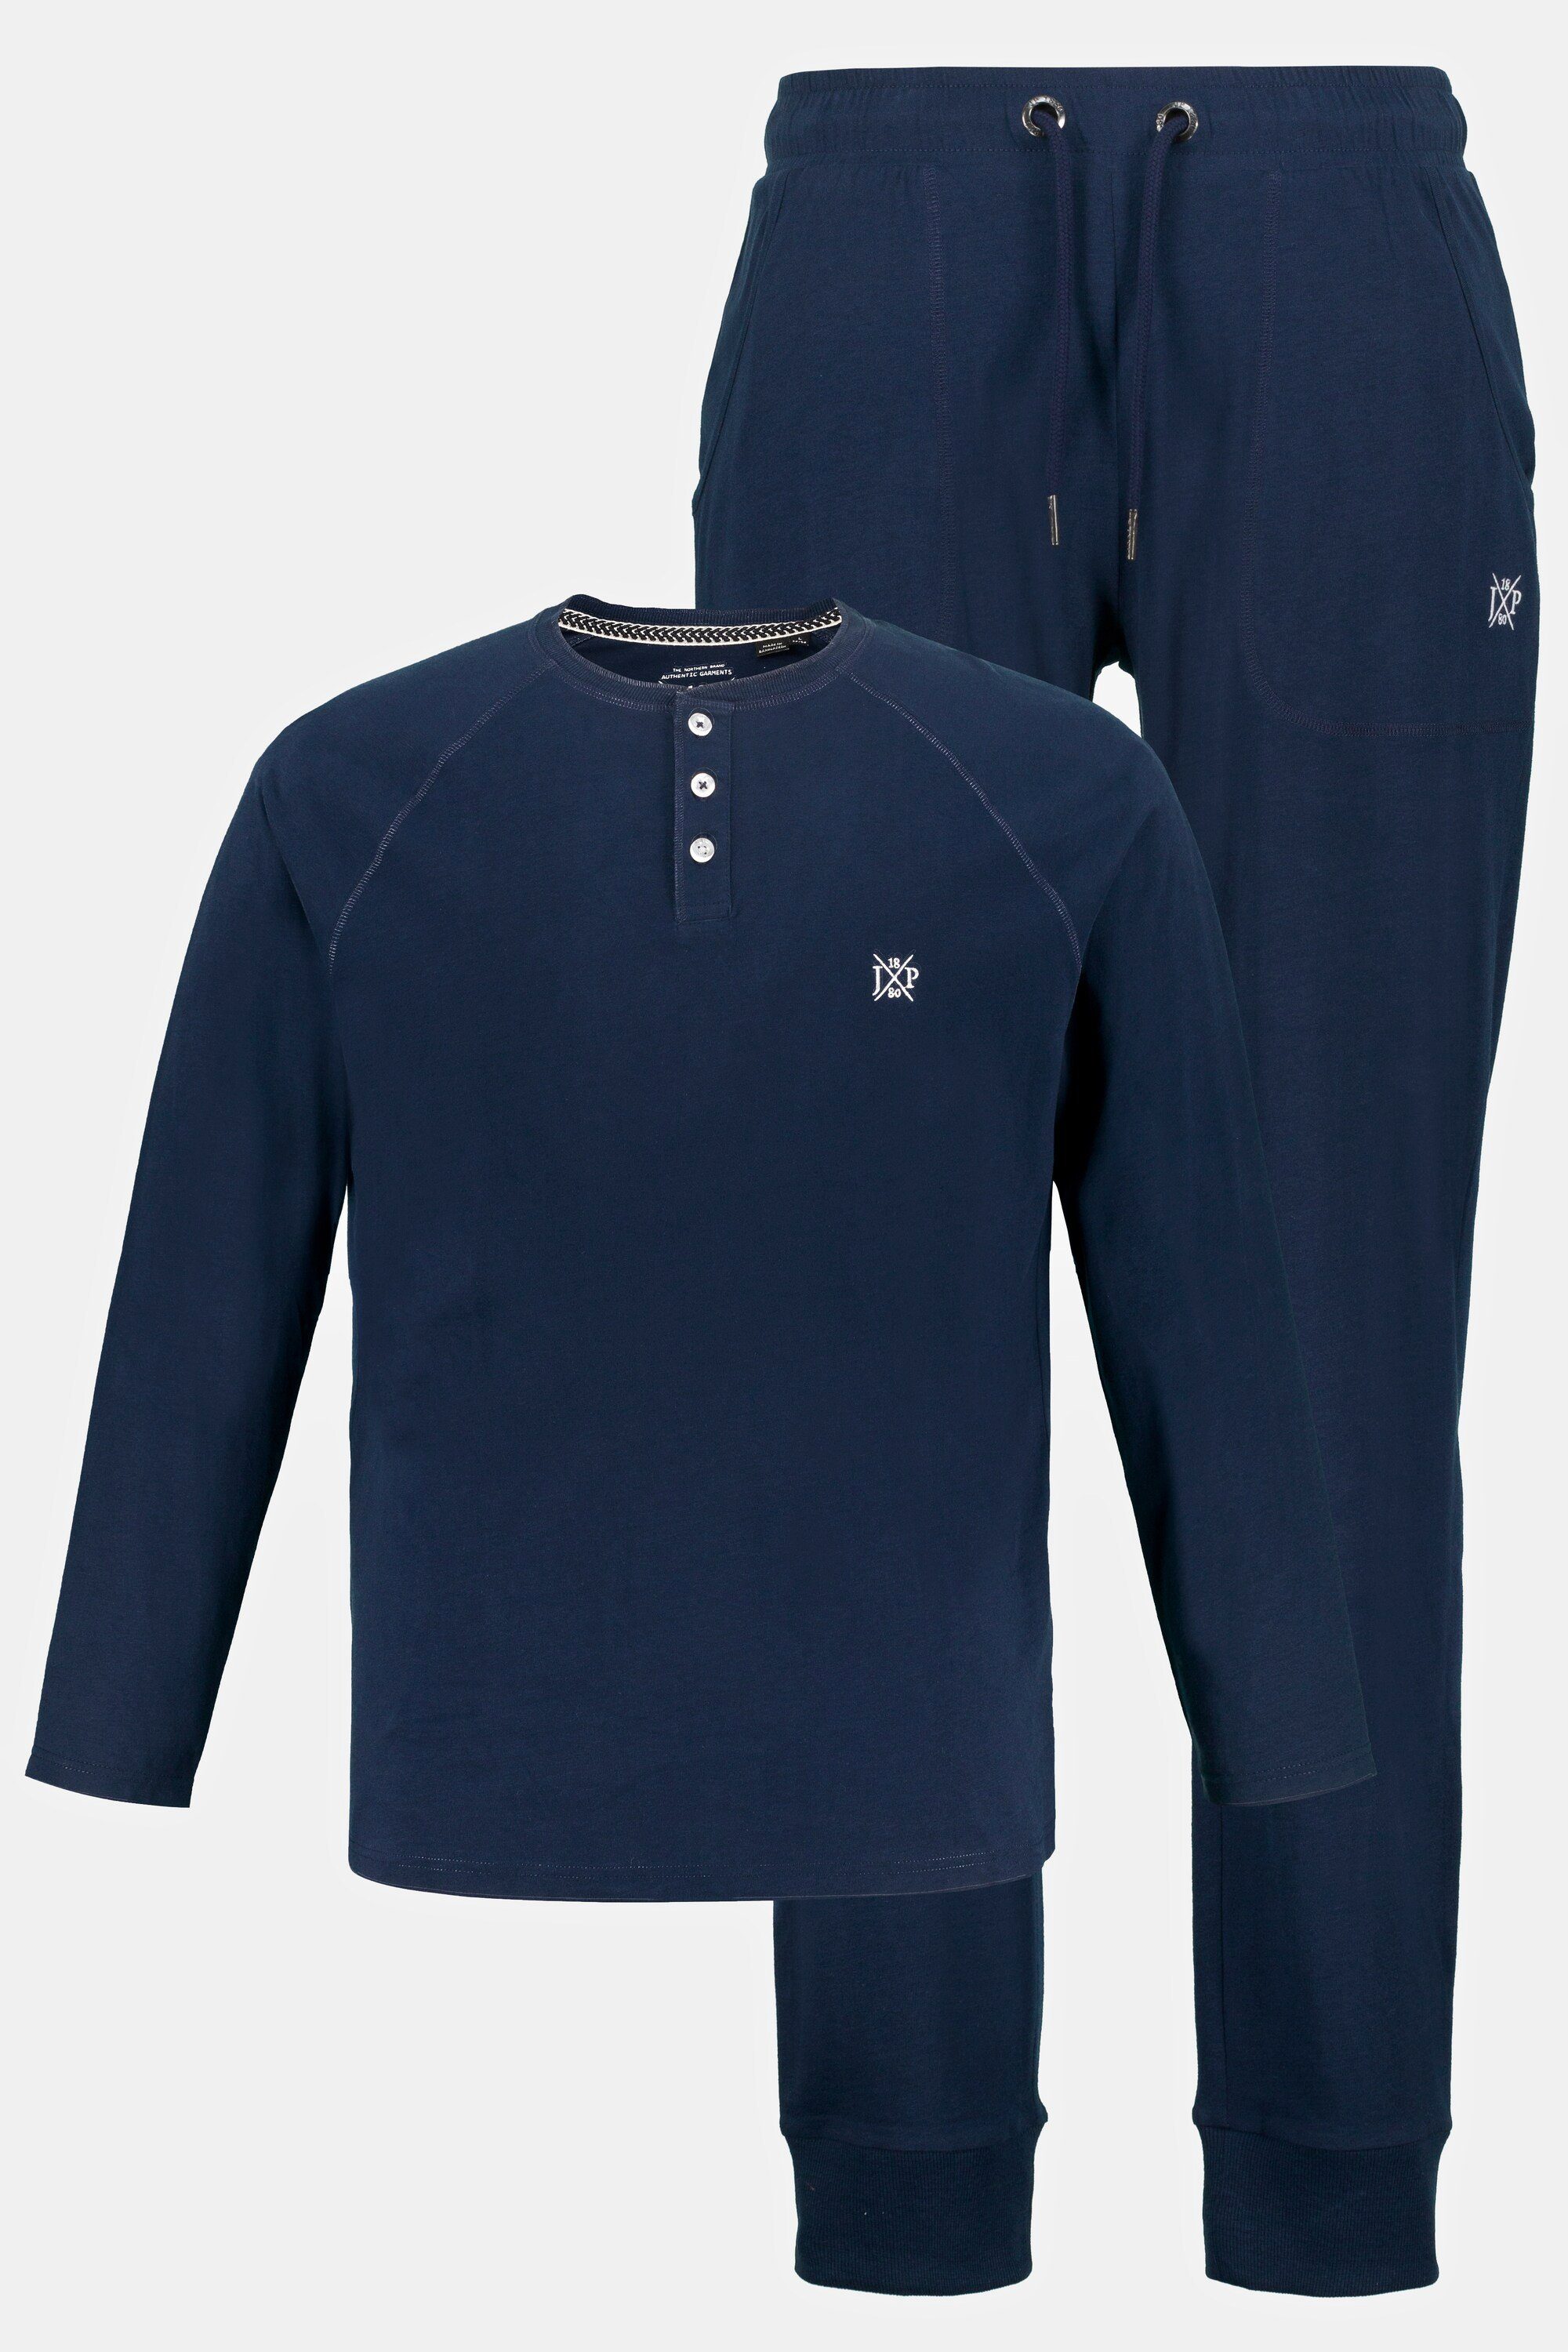 JP1880 Schlafanzug nachtblau Langarm lange Hose Henley Schlafanzug